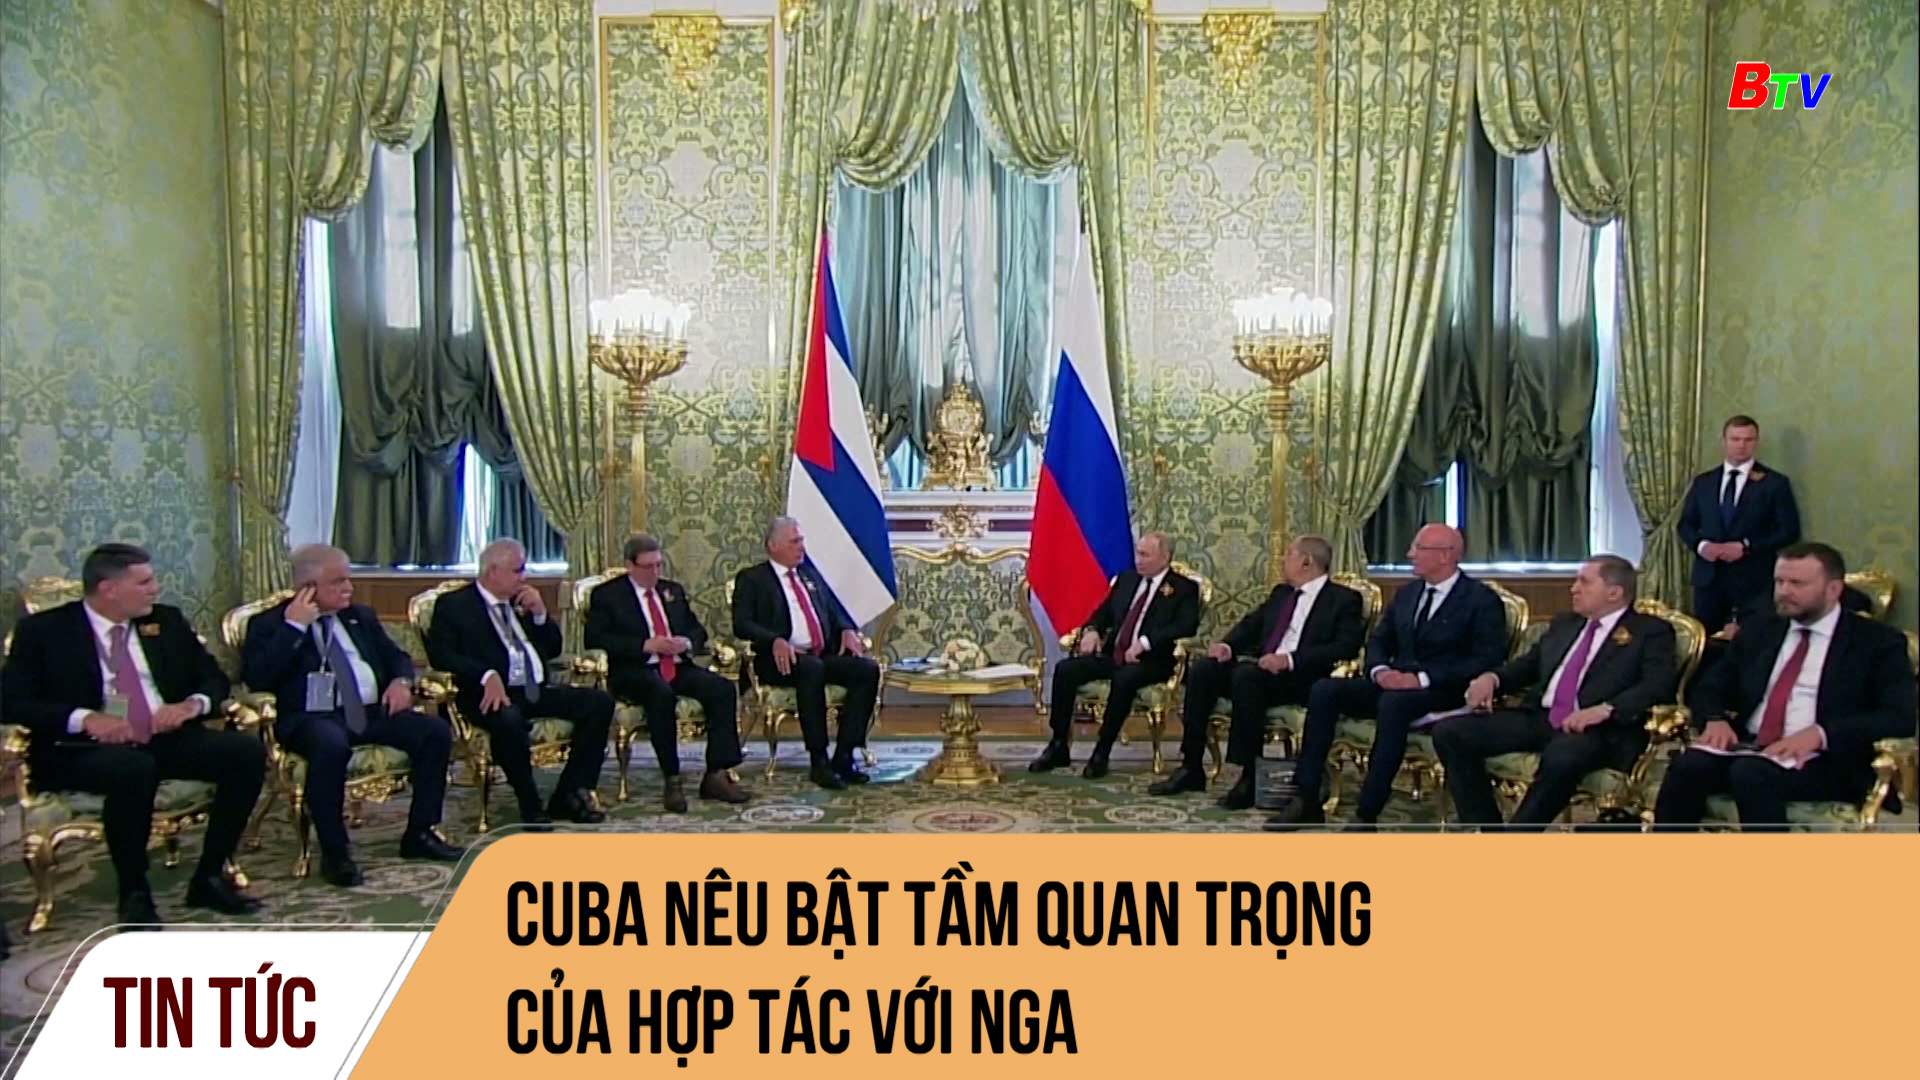 Cuba nêu bật tầm quan trọng của hợp tác với Nga